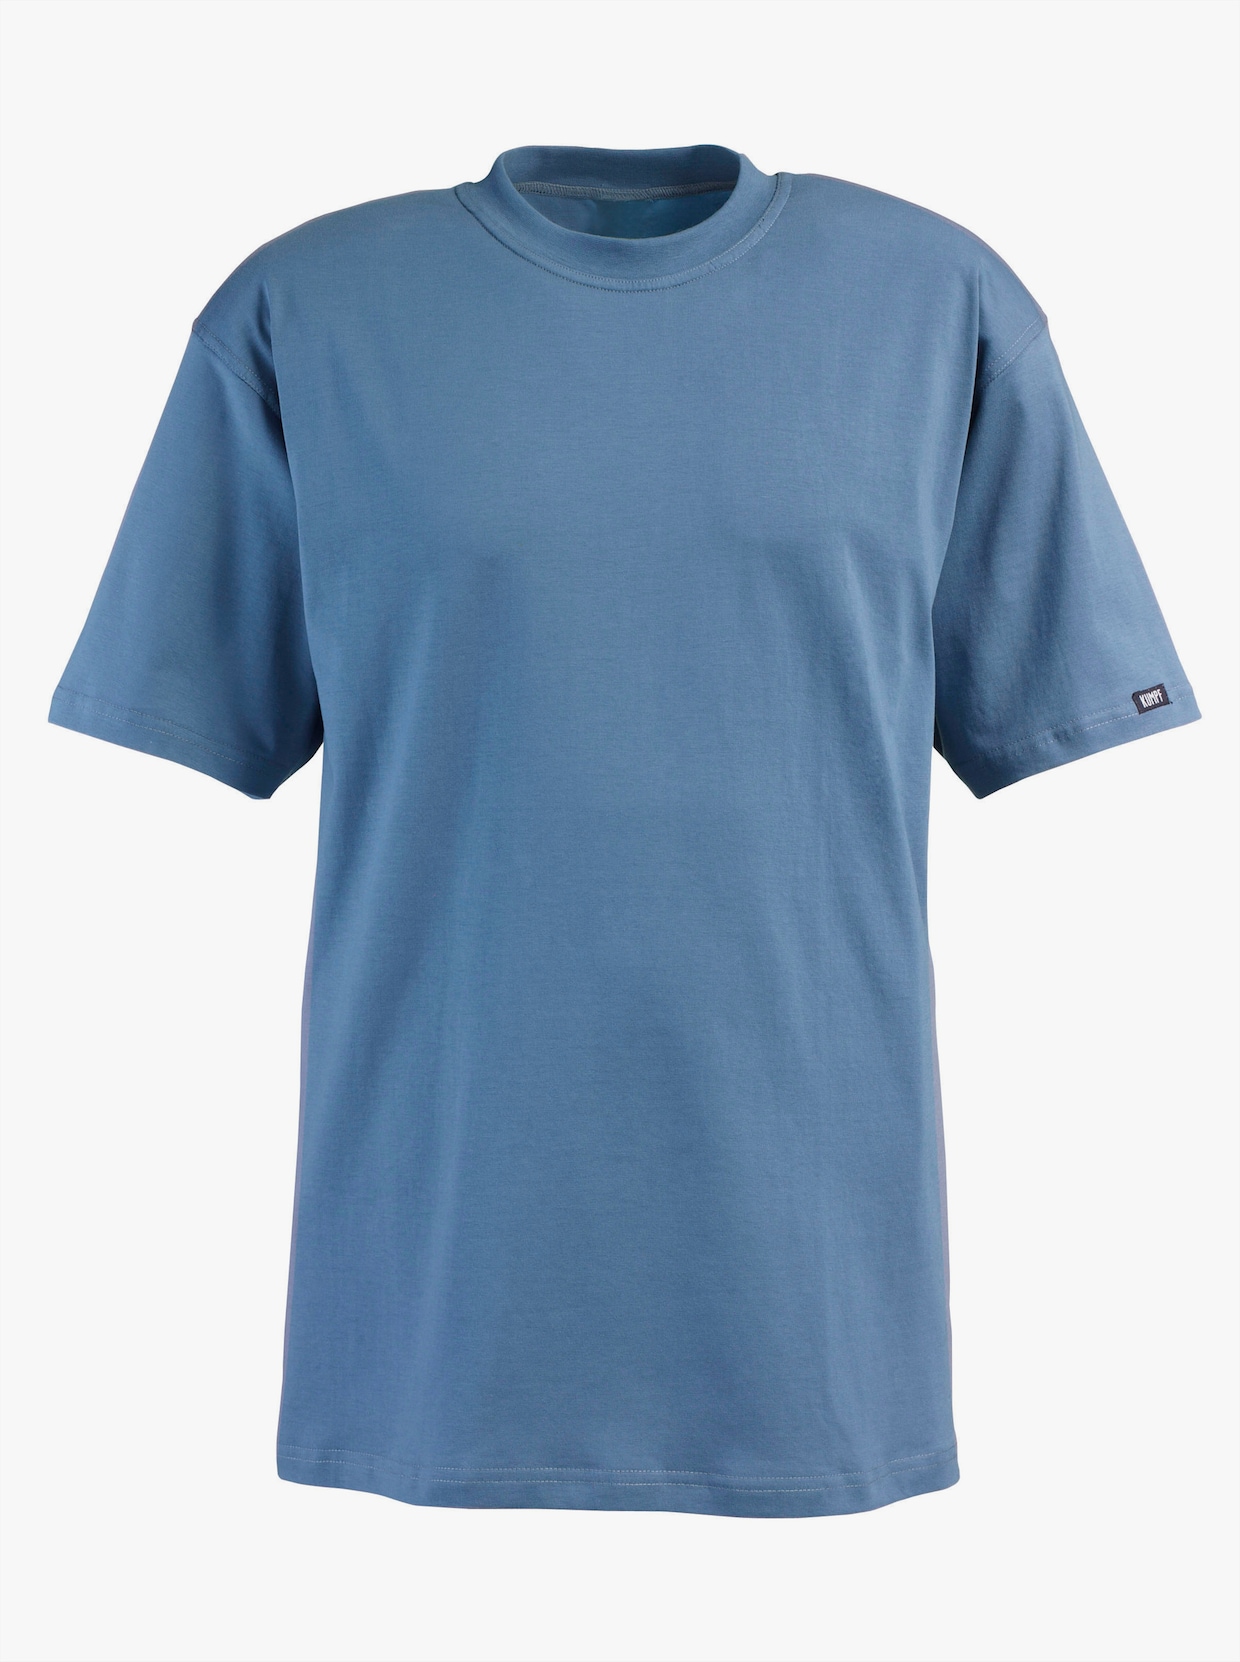 Kumpf Shirt - marine + stahlblau